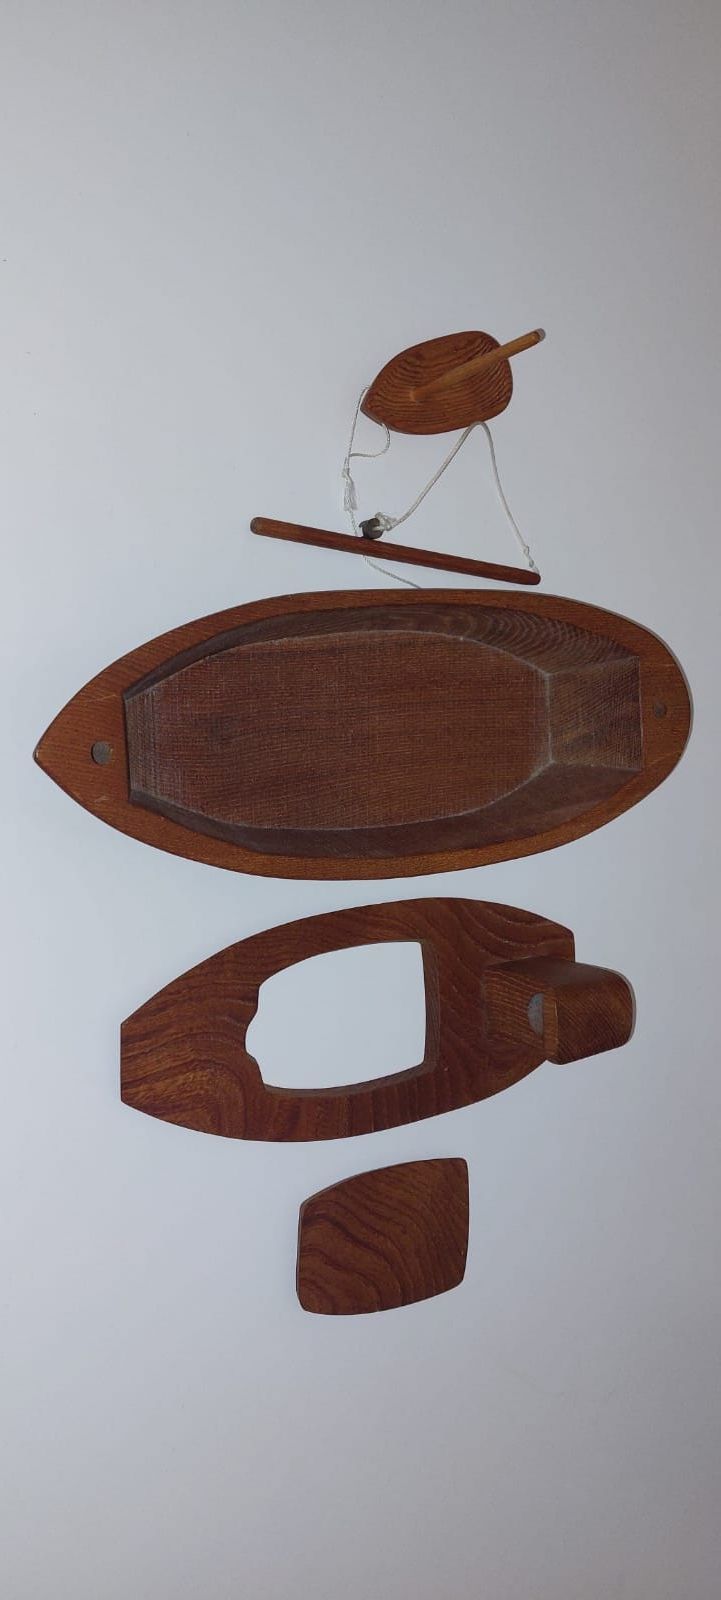 Barca din lemn modelism